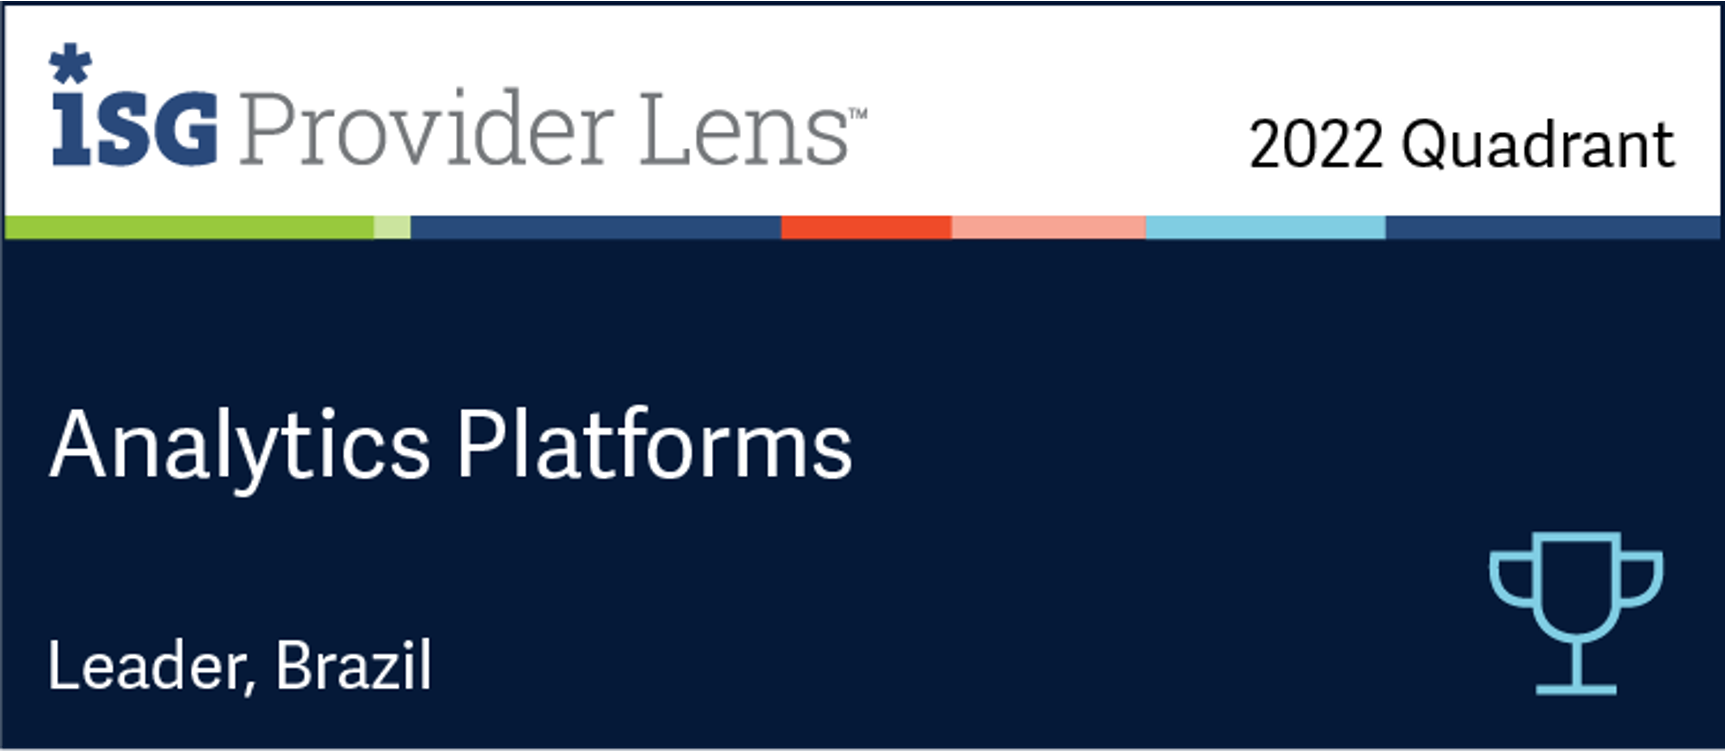 ISG Provider Lens 2021